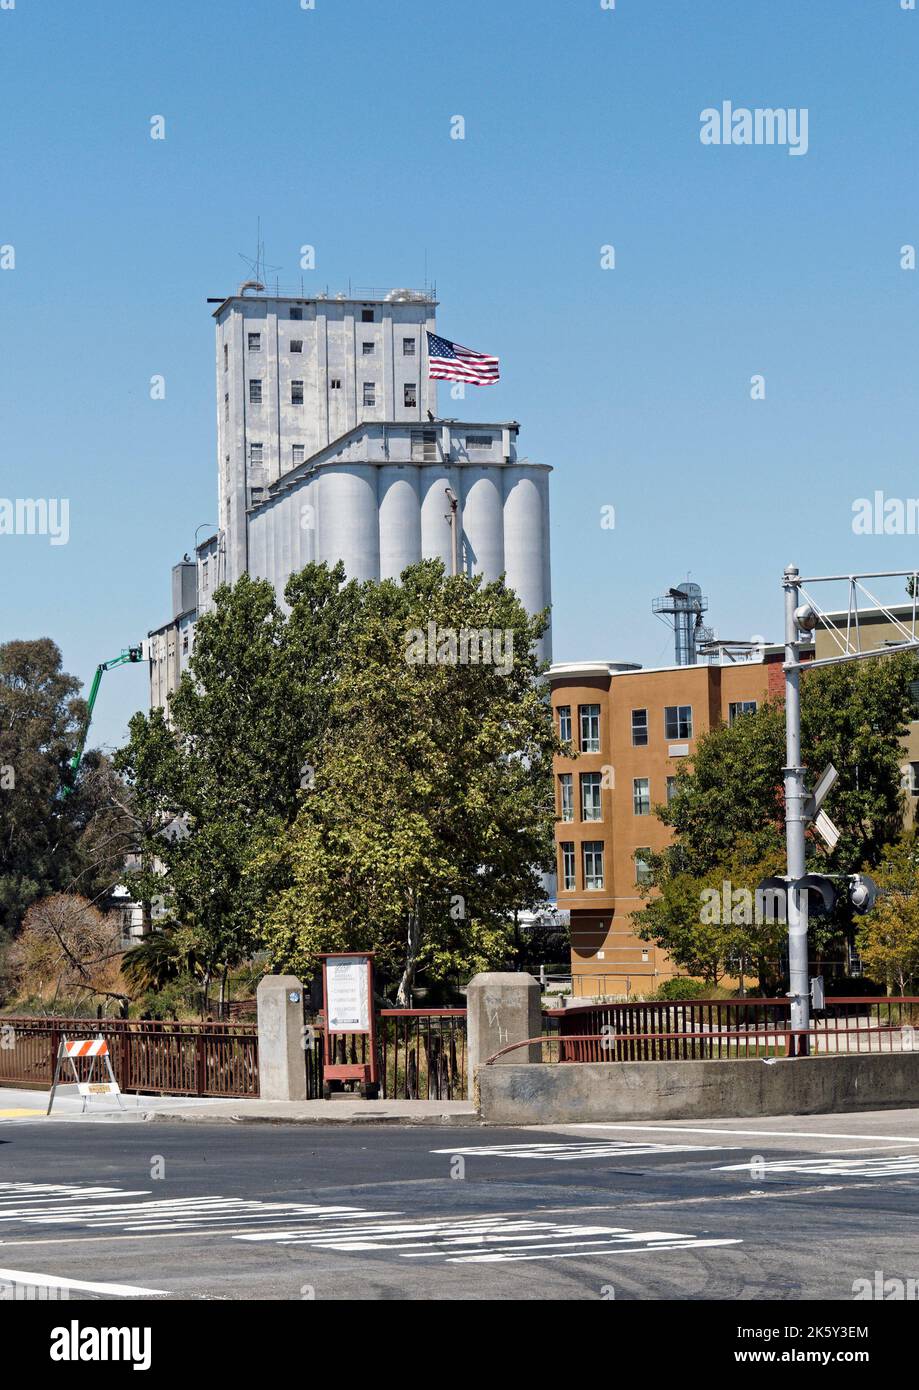 Grande usine et autres bâtiments industriels, dans l'ancienne ville portuaire historique de Petaluma dans le comté de Sonoma, Californie, États-Unis. Banque D'Images